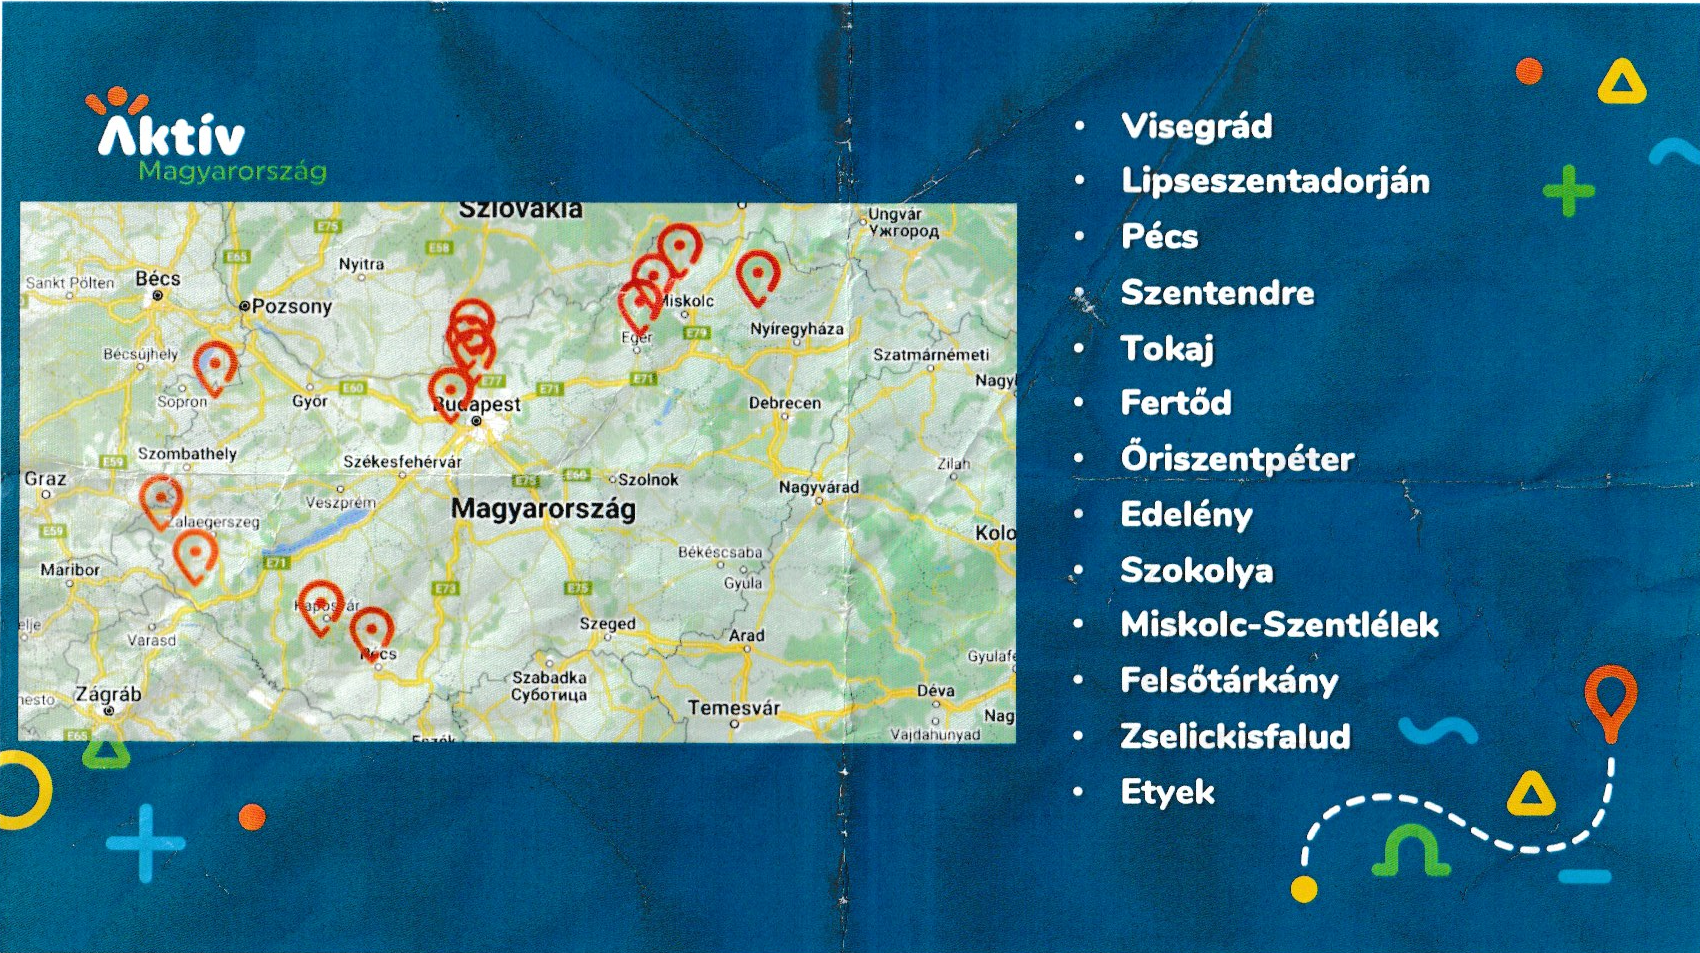 Ezen a 13 településen érhető el az Aktív Magyarország e-bike flottája és a szervezett túrák:  Visegrád, Lipseszentadorján, Pécs, Szentendre, Tokaj, Fertőd, Őriszentpéter, Edelény, Szokolya, Miskolc-Szentlélek, Felsőtárkány, Zselickisfalud és Etyek